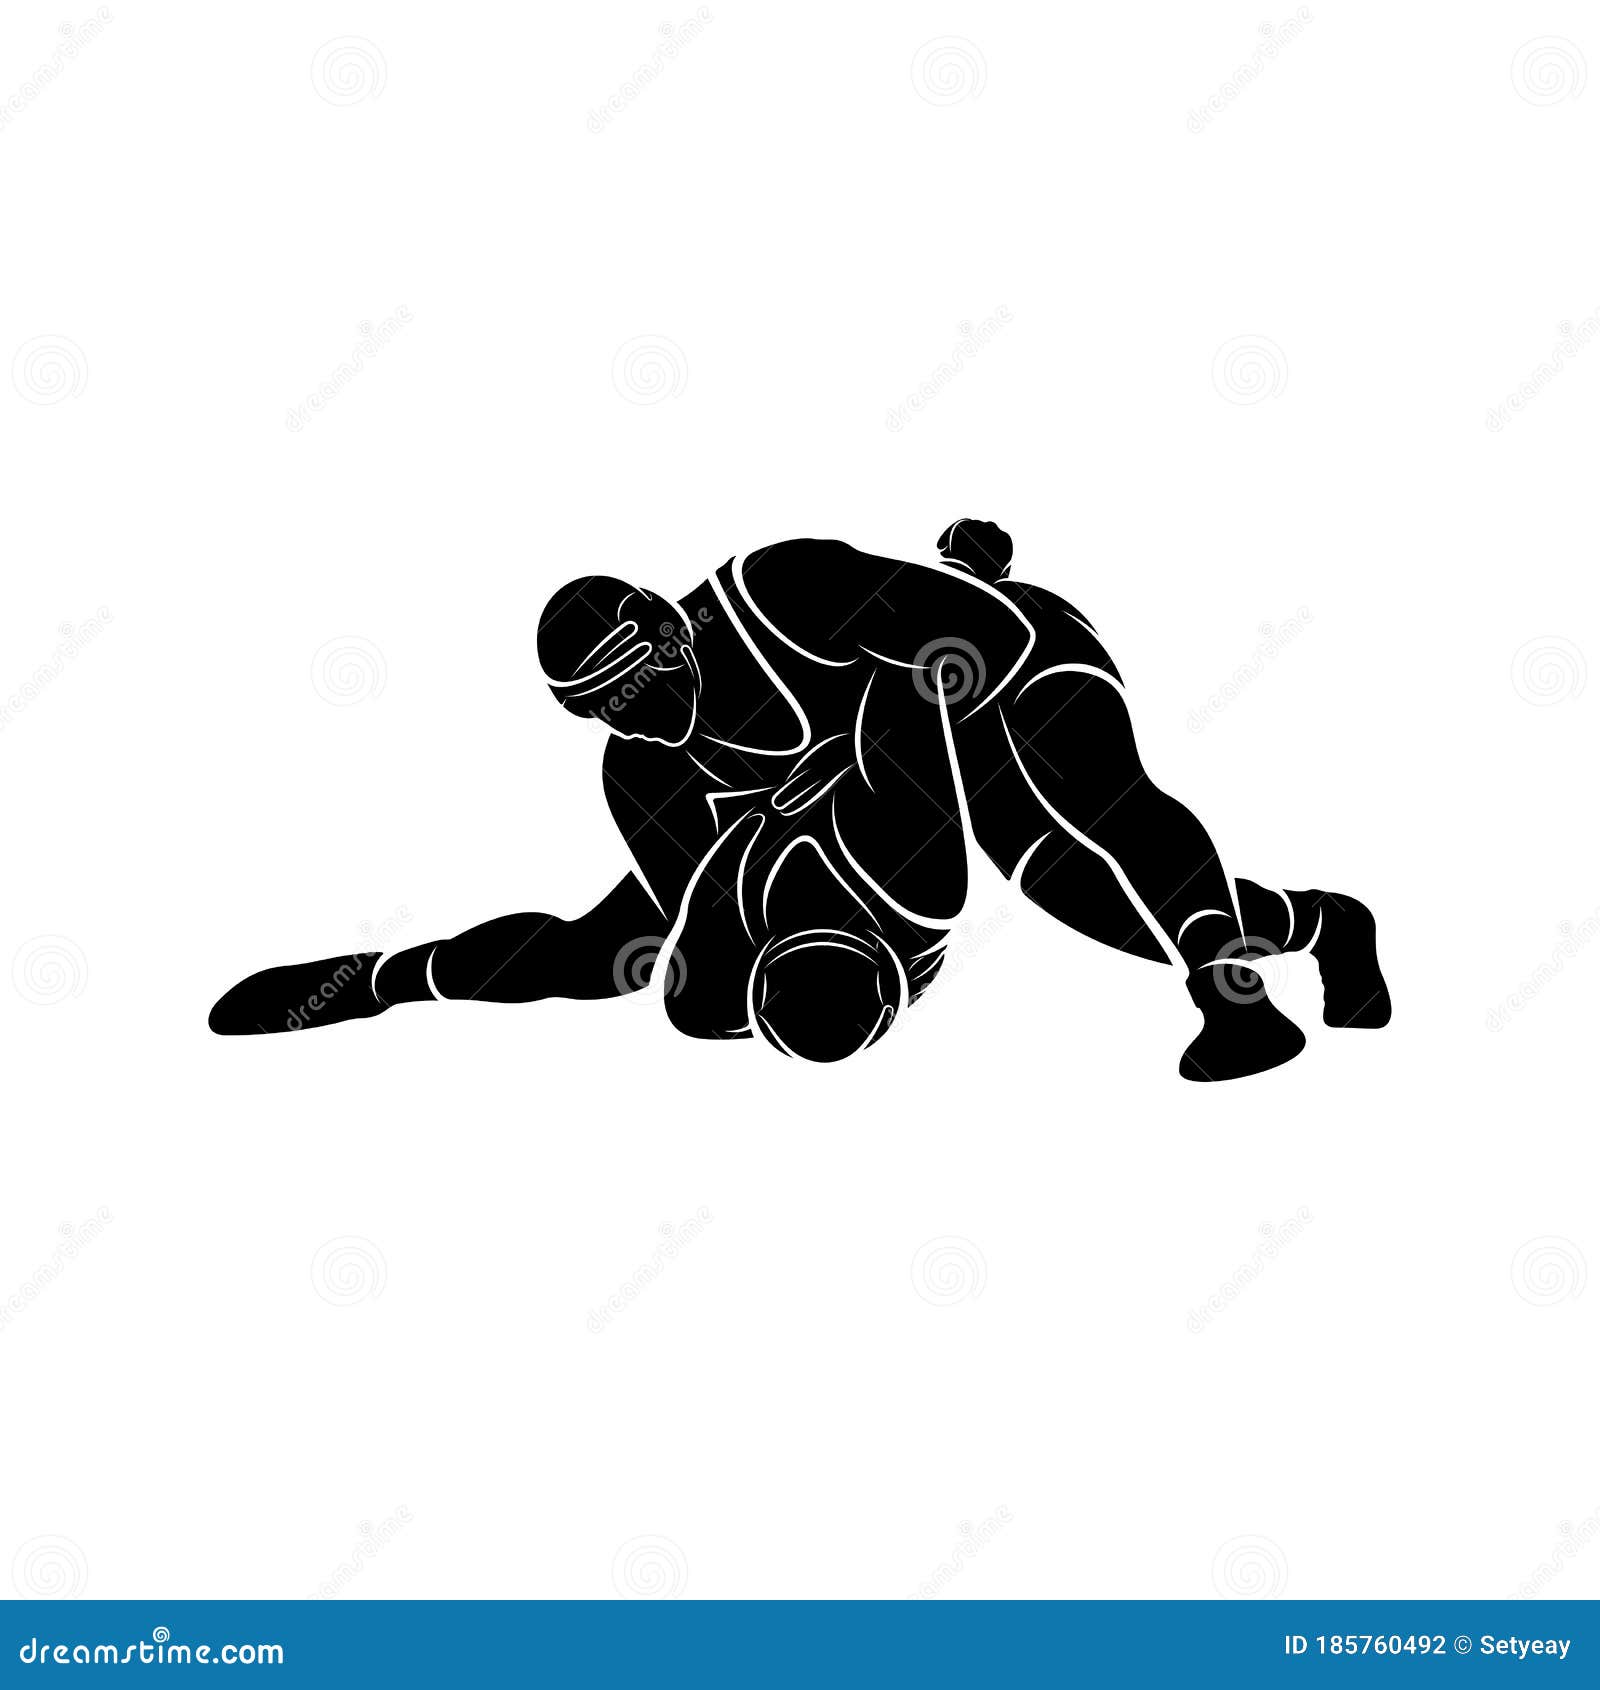 Wrestling Logo png images | PNGEgg